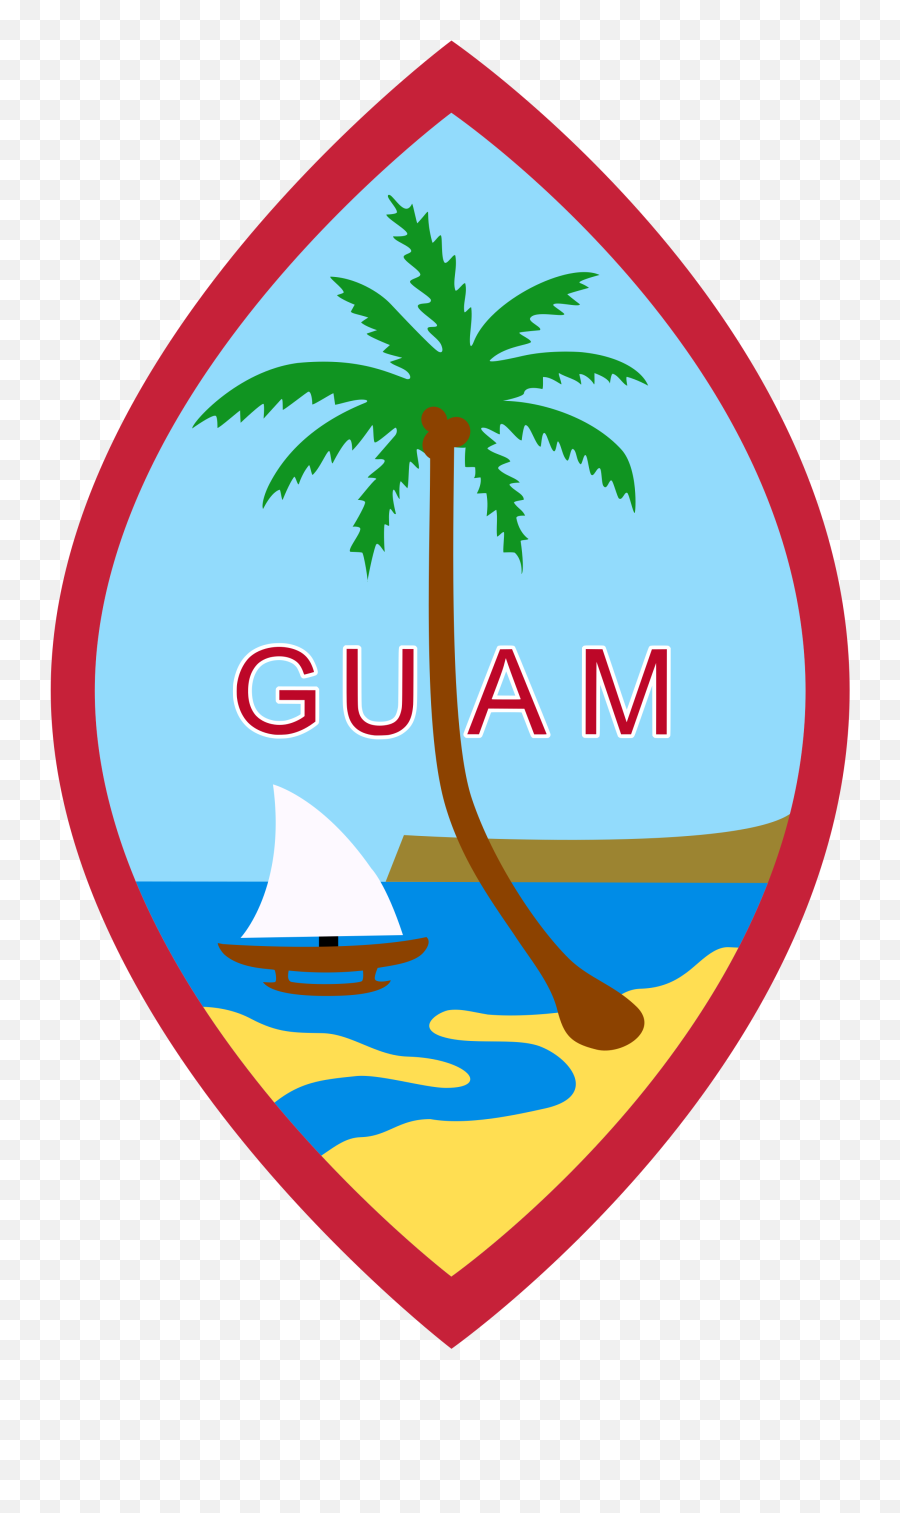 108 Guam Vector Images At Vectorified - Guam Flag Emoji,Guam Flag Emoji